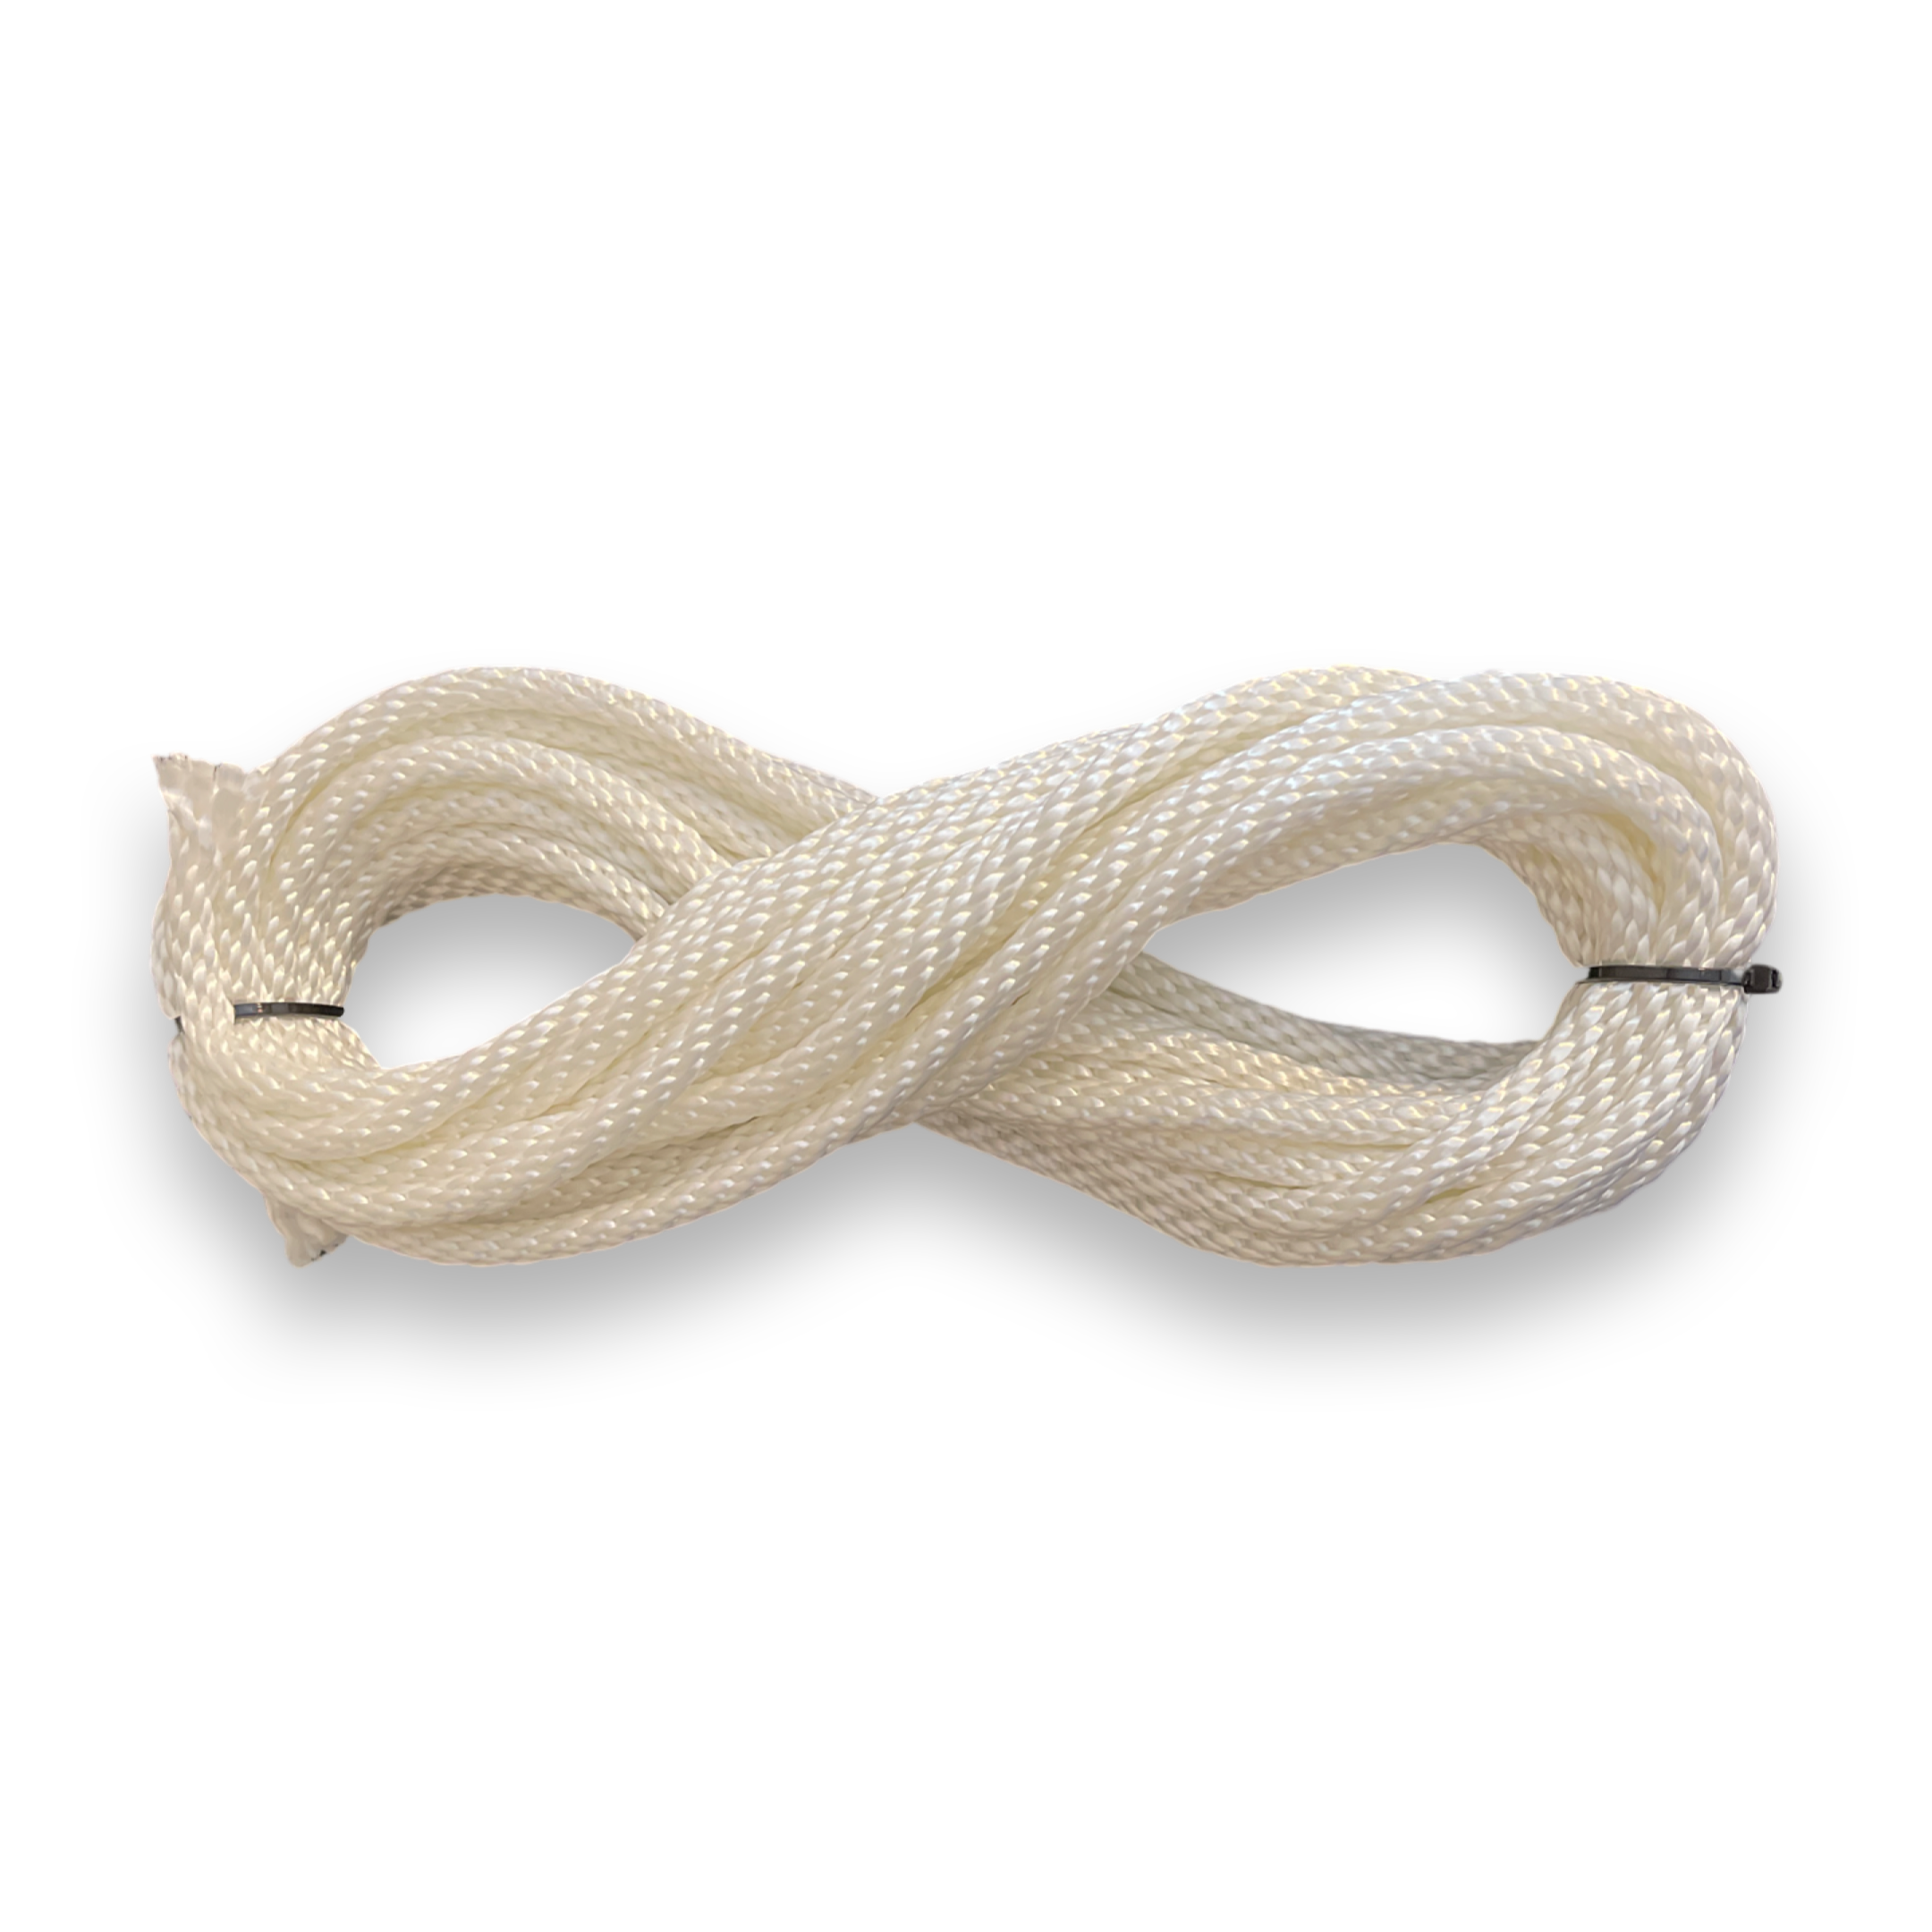 Nylon (Braided) Shibari Rope 30 ft – deGiotto Rope